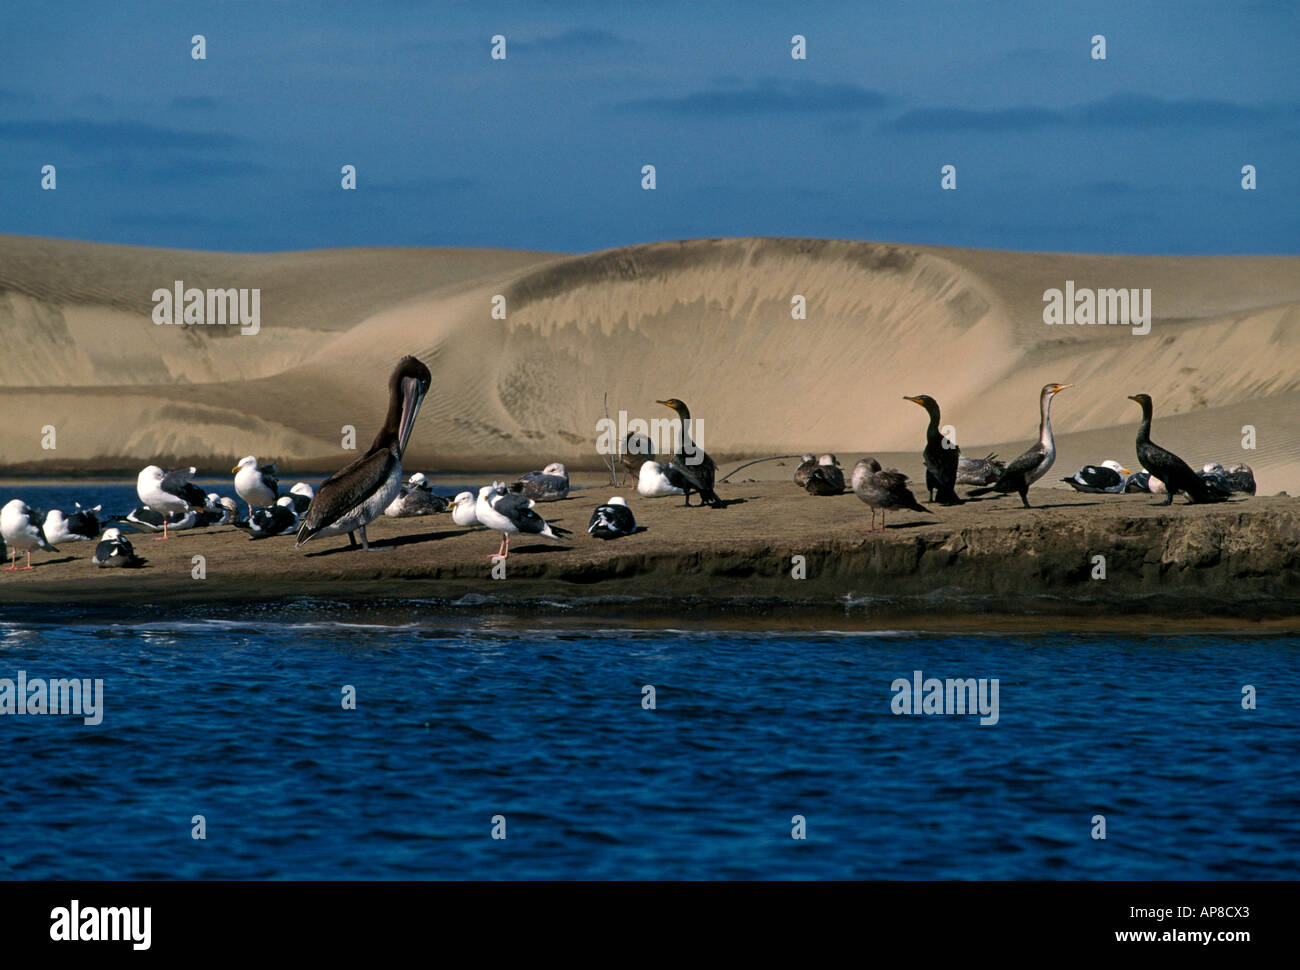 pelicans, cormorants, seagulls, seabirds, waterbirds, migratory birds, aquatic birds, wildlife, Magdalena Bay, Baja California Sur State, Mexico Stock Photo